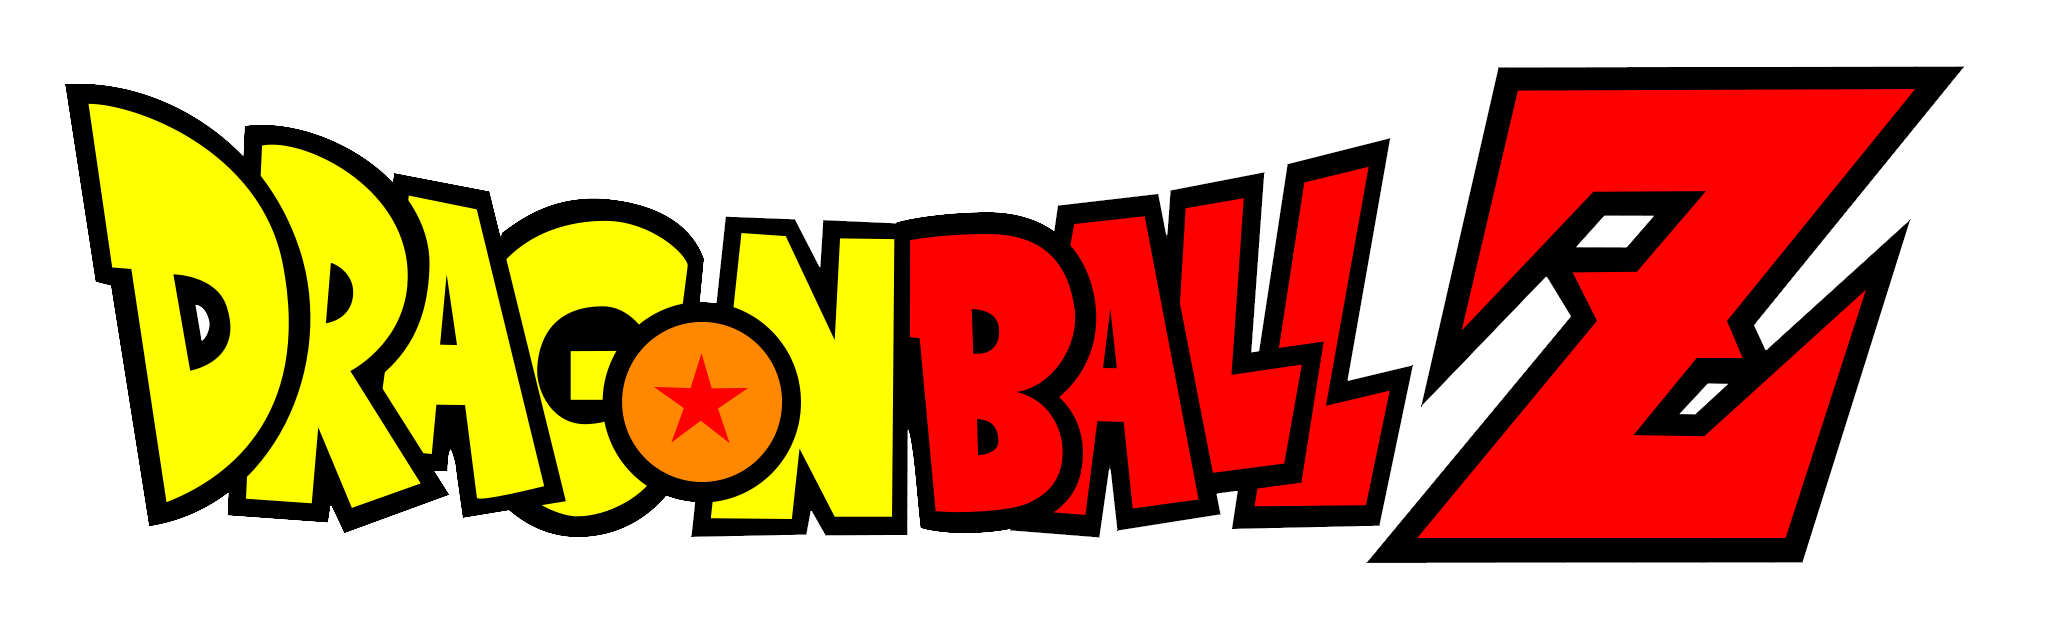 Dragon_Ball_Z_logo